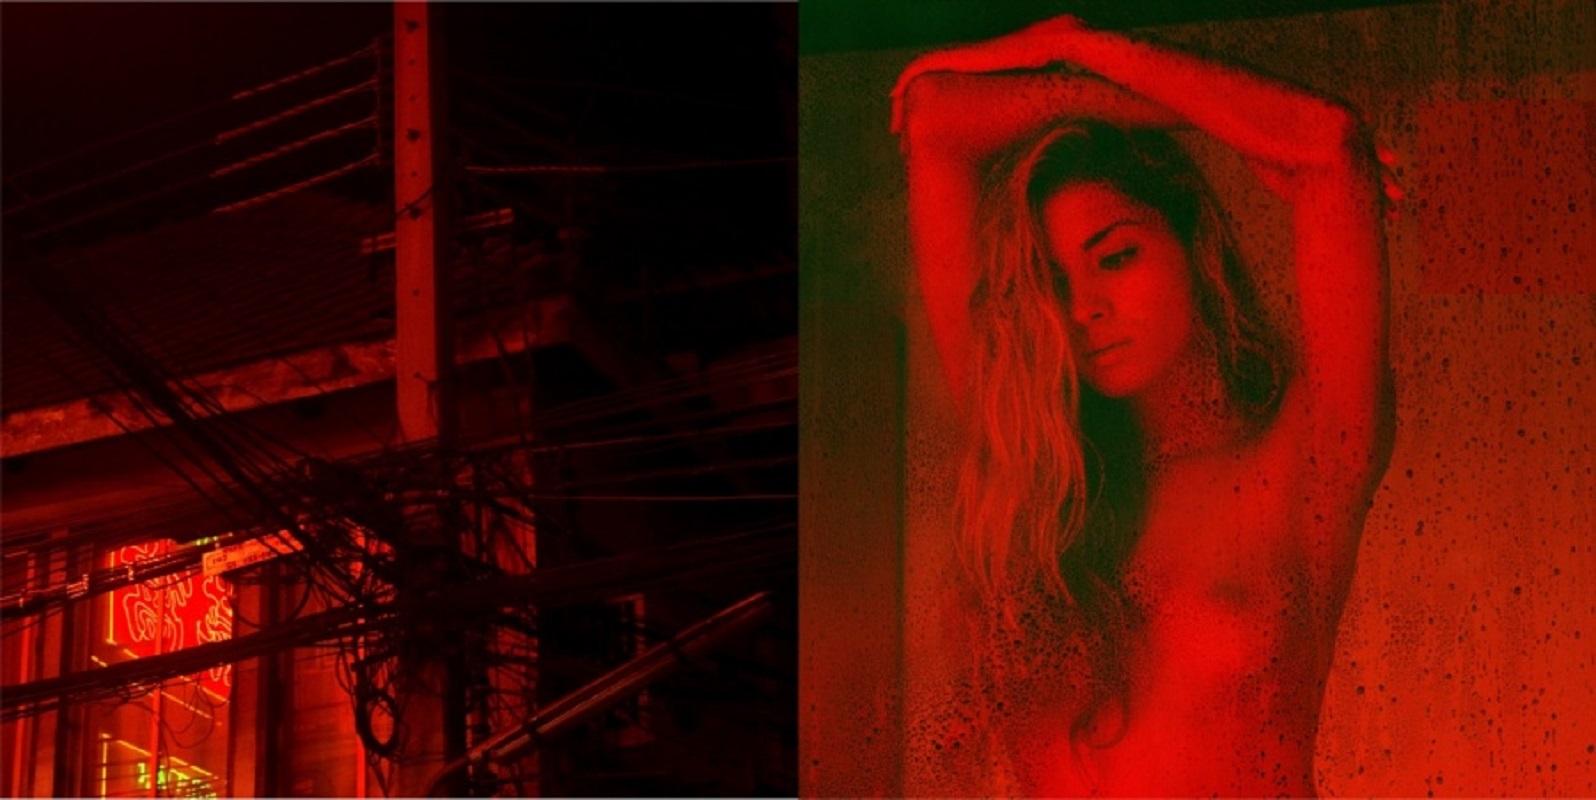 Guido Argentini Nude Photograph – Diptychon: Liebe kam zu diesen verwundeten Lippen - nackte Frau bei Nacht mit roten Lichtern